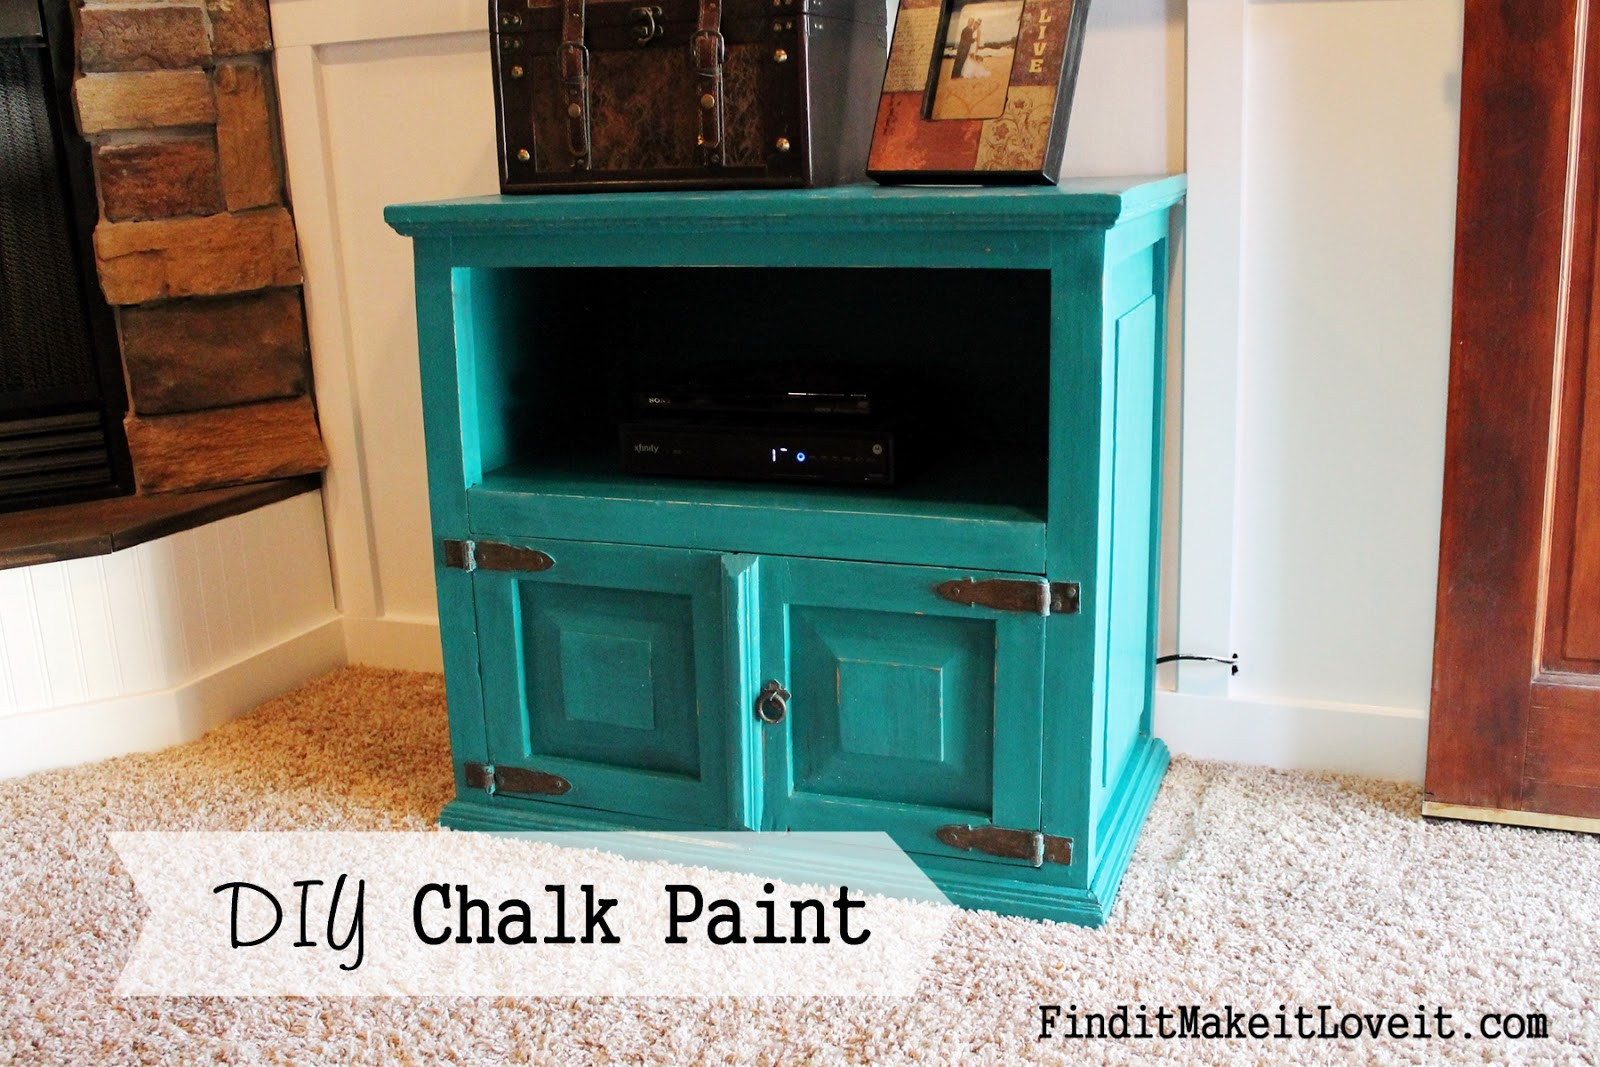 Best ideas about DIY Chalk Paint Furniture
. Save or Pin DIY Chalk Paint Find it Make it Love it Now.